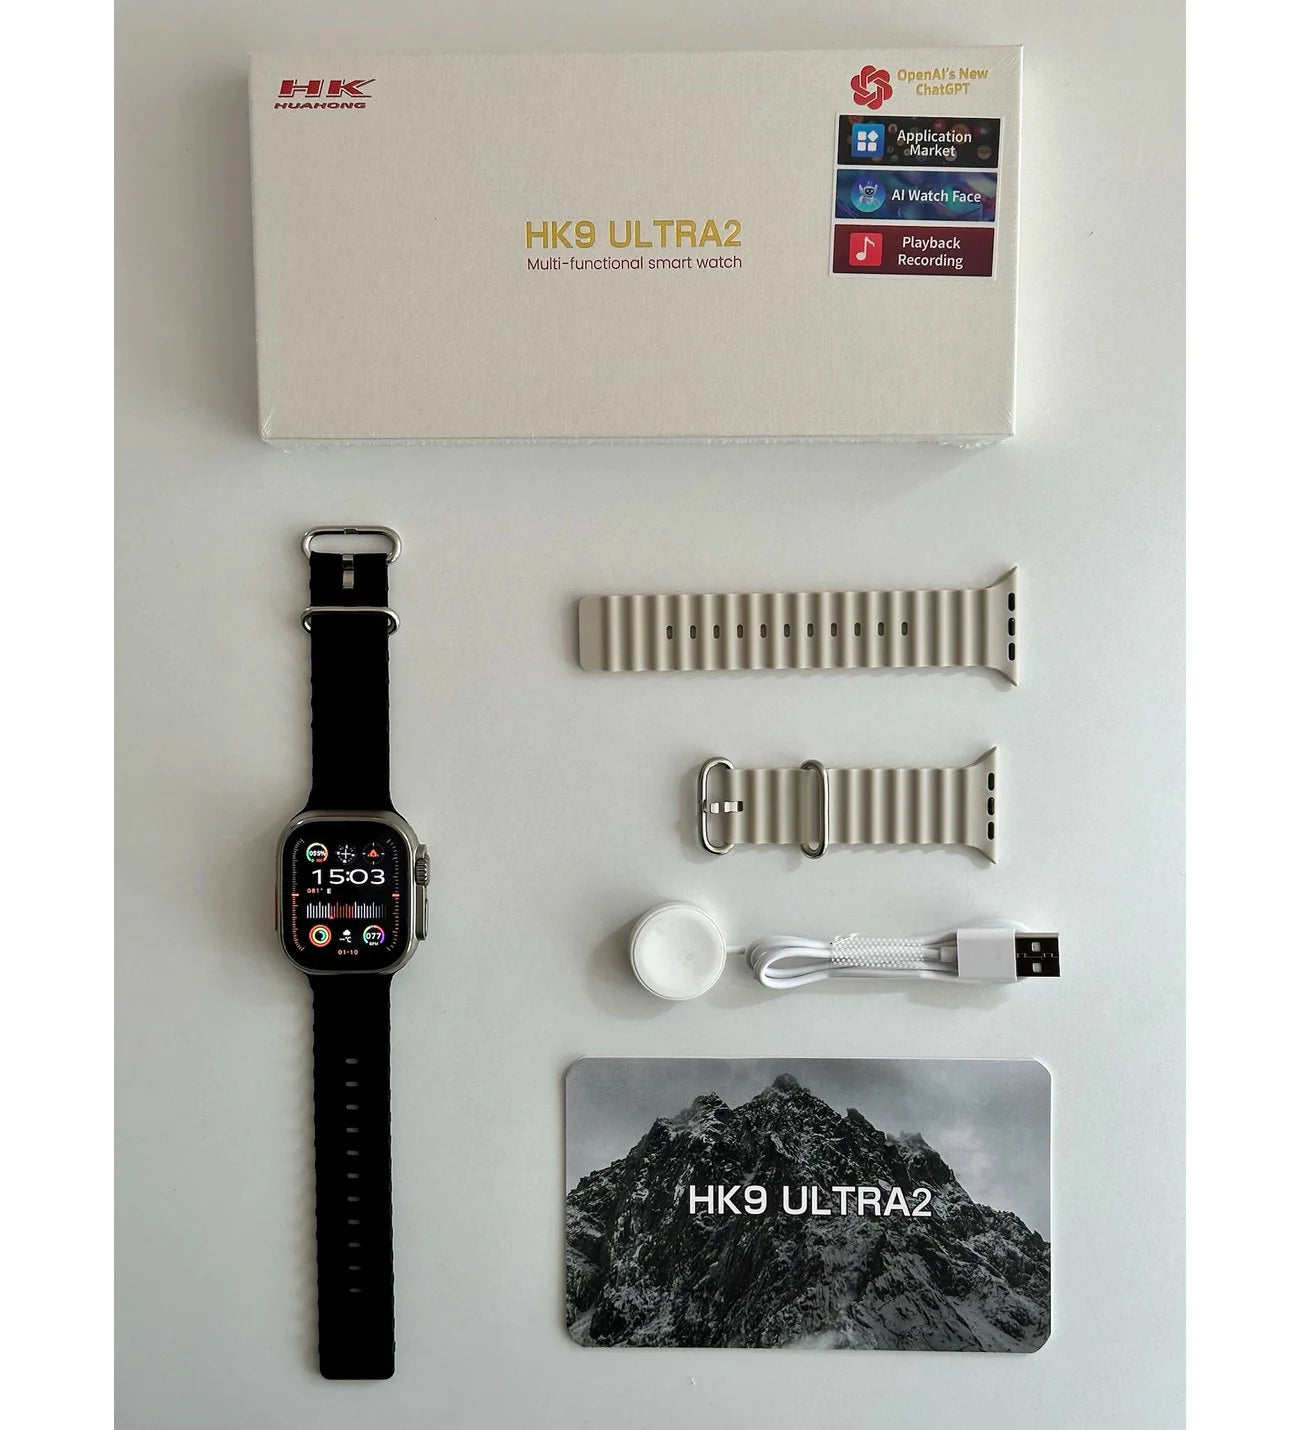 HK9 Ultra 2 Smart Watch - eShop Now